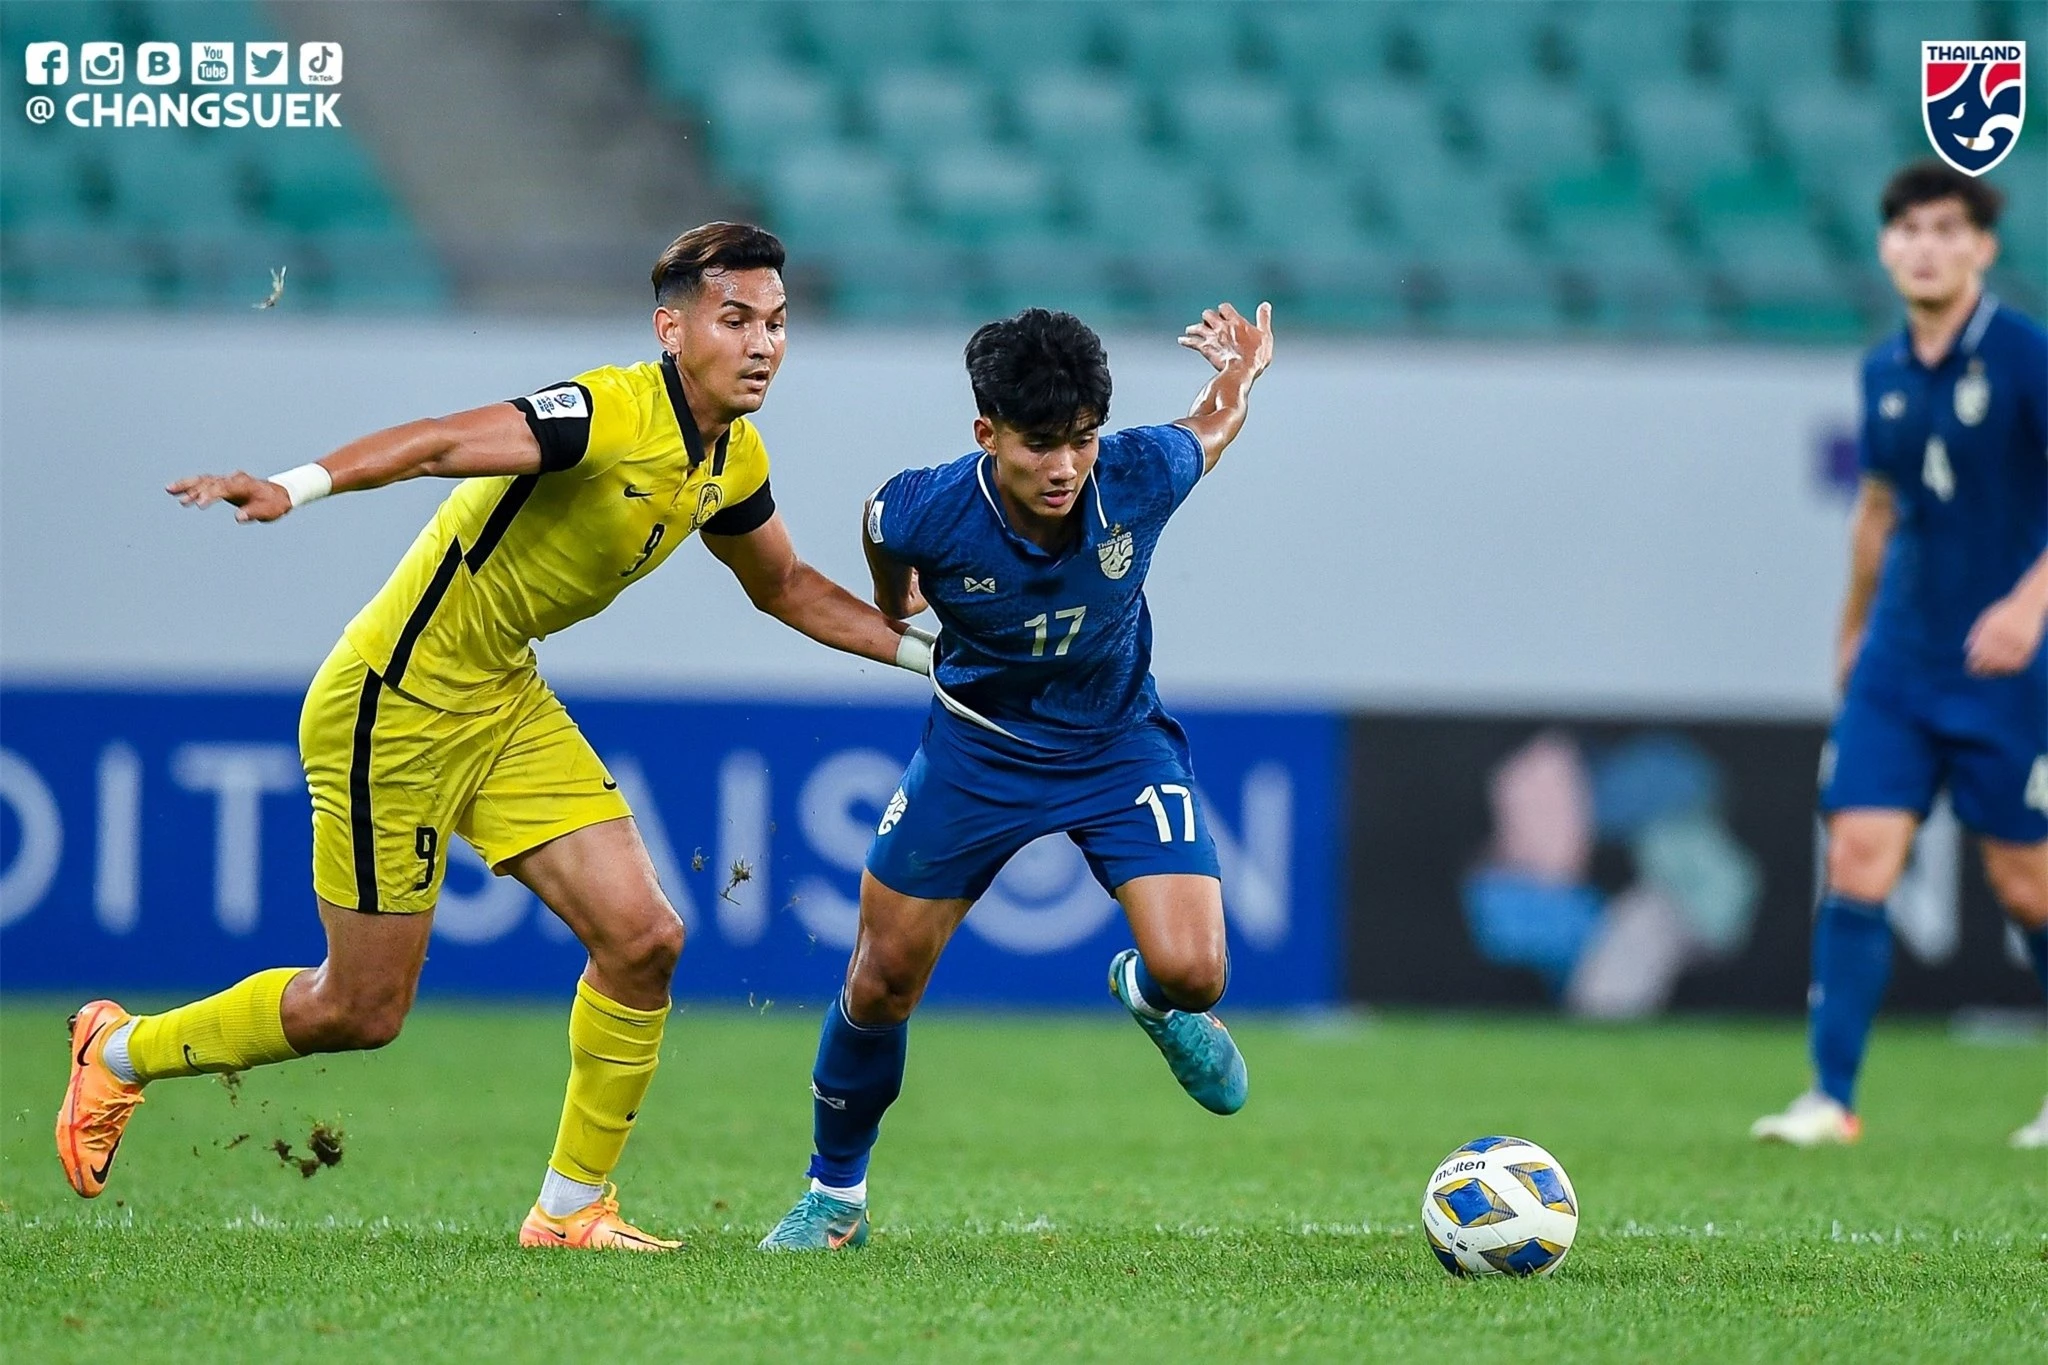 Suphanat lập cú đúp mang về chiến thắng 3-0 của U23 Thái Lan trước U23 Malaysia - Ảnh: Changsuek